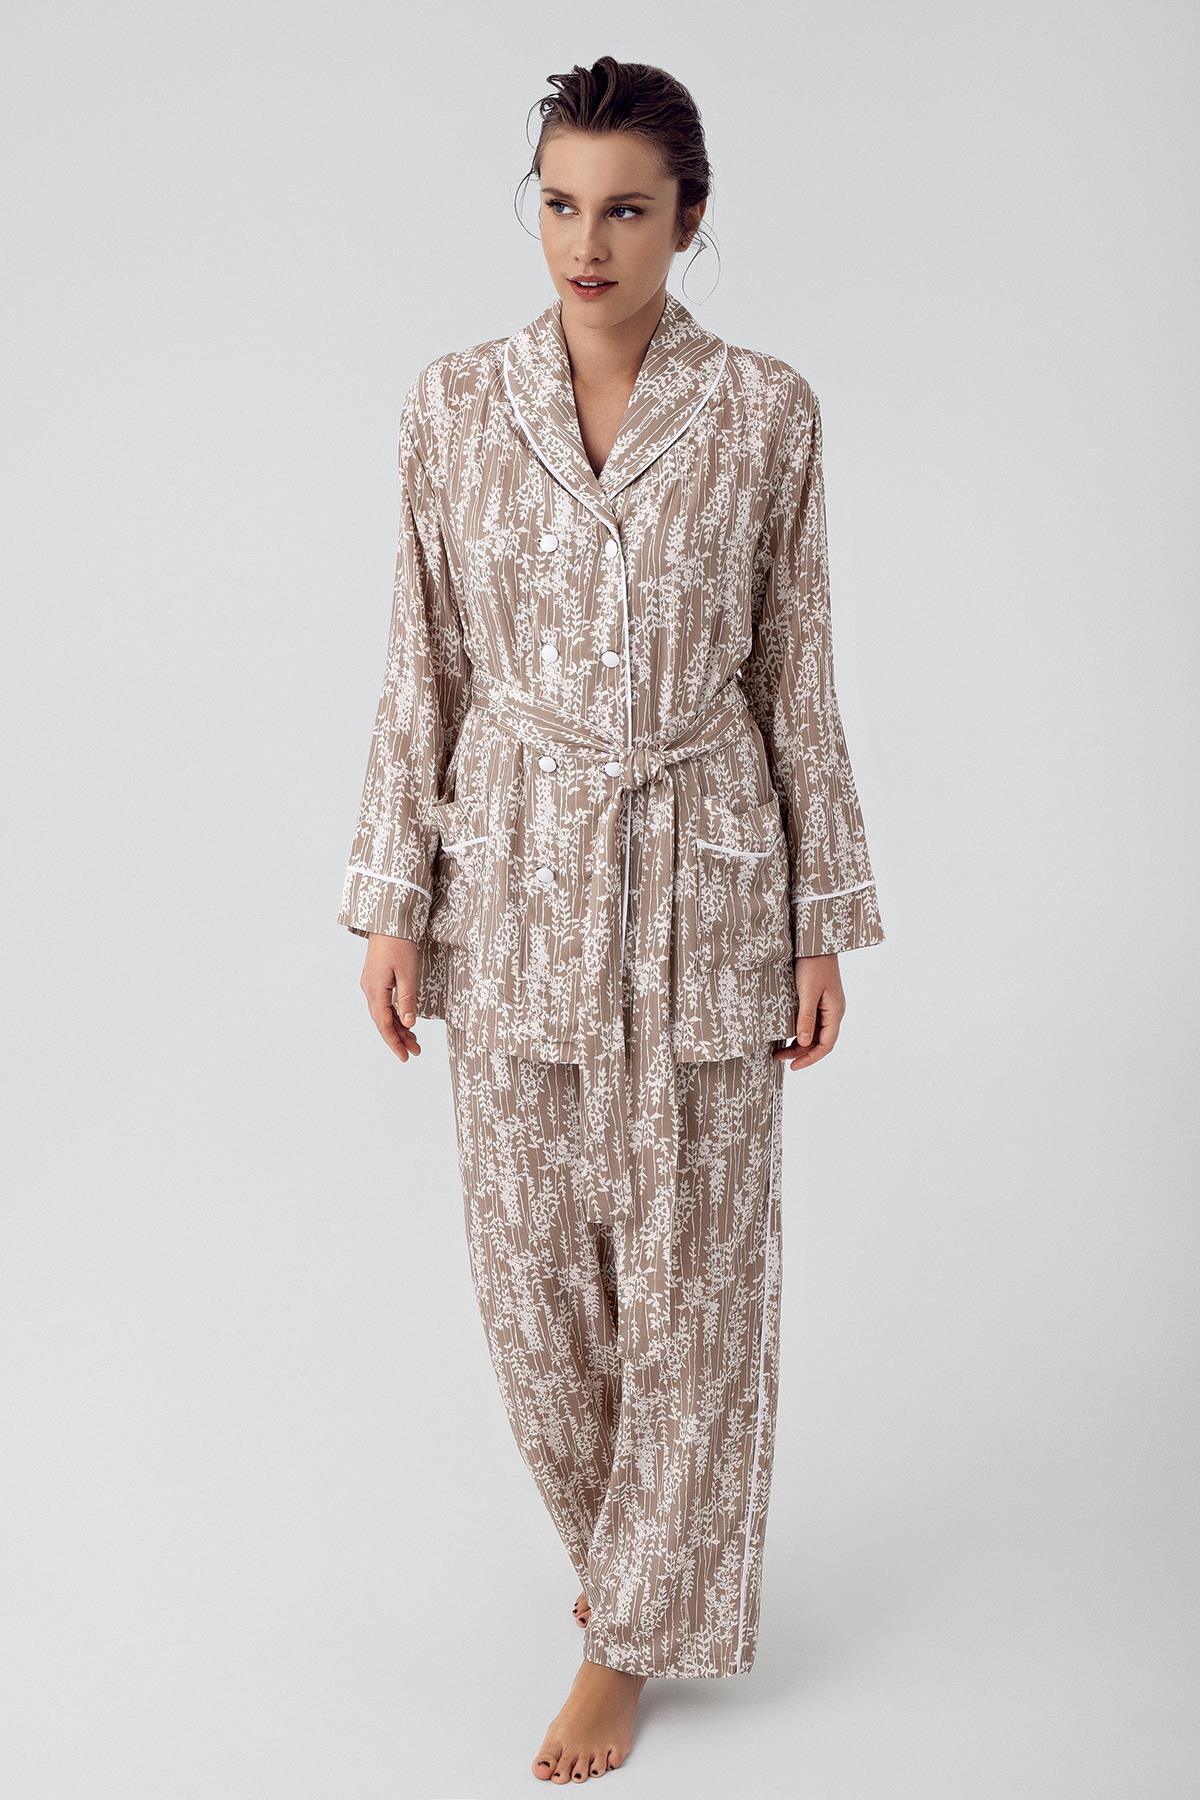 Desenli Düğmeli Uzun Kollu Kimono Esnek Viskoz Pijama Takımı 16205 - Artış Collection